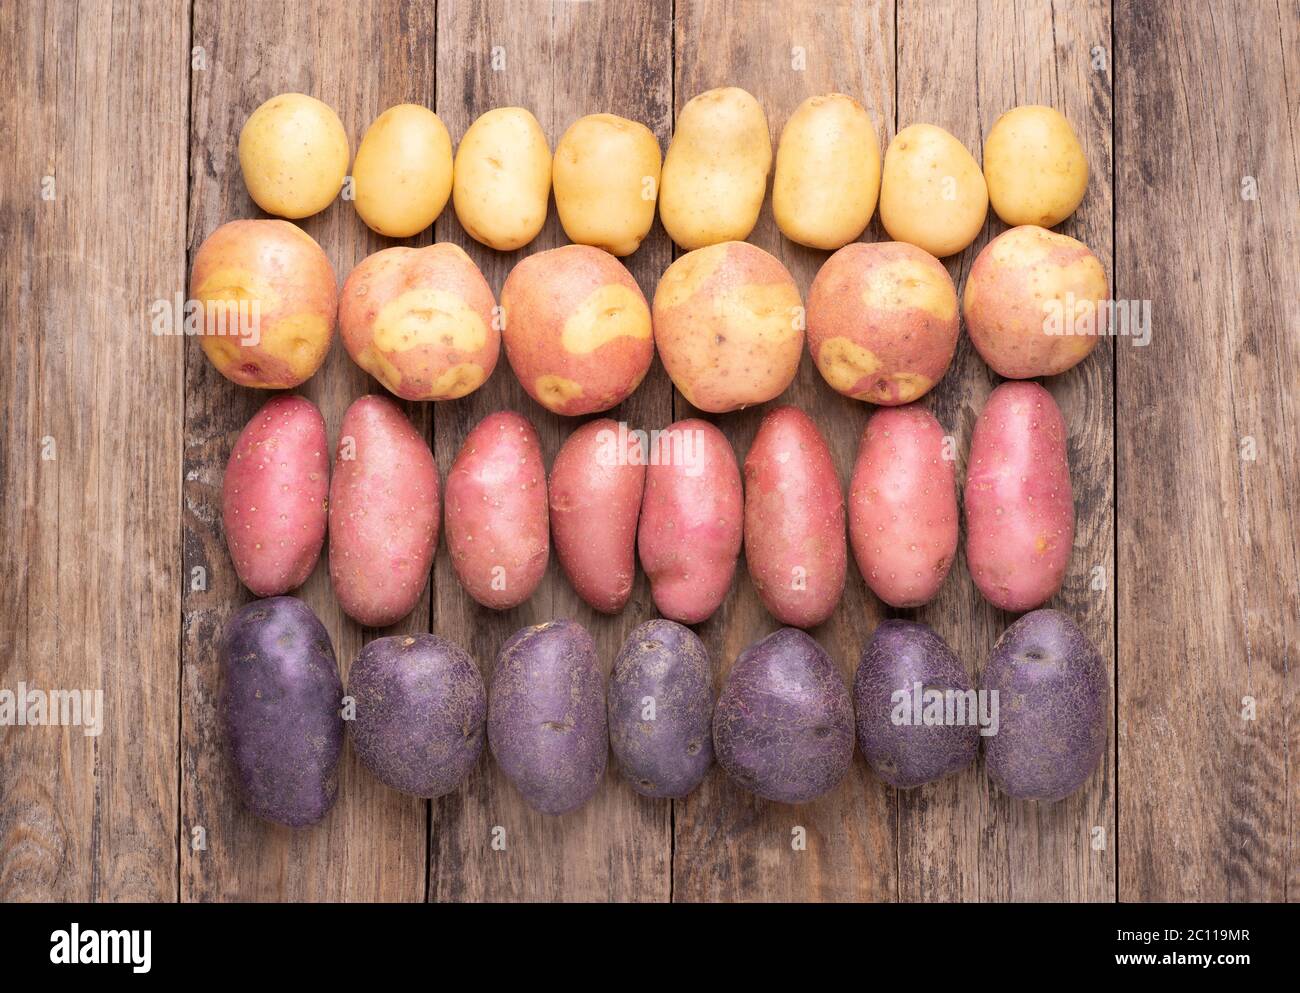 Différents types de pommes de terre sur table rustique en bois Banque D'Images